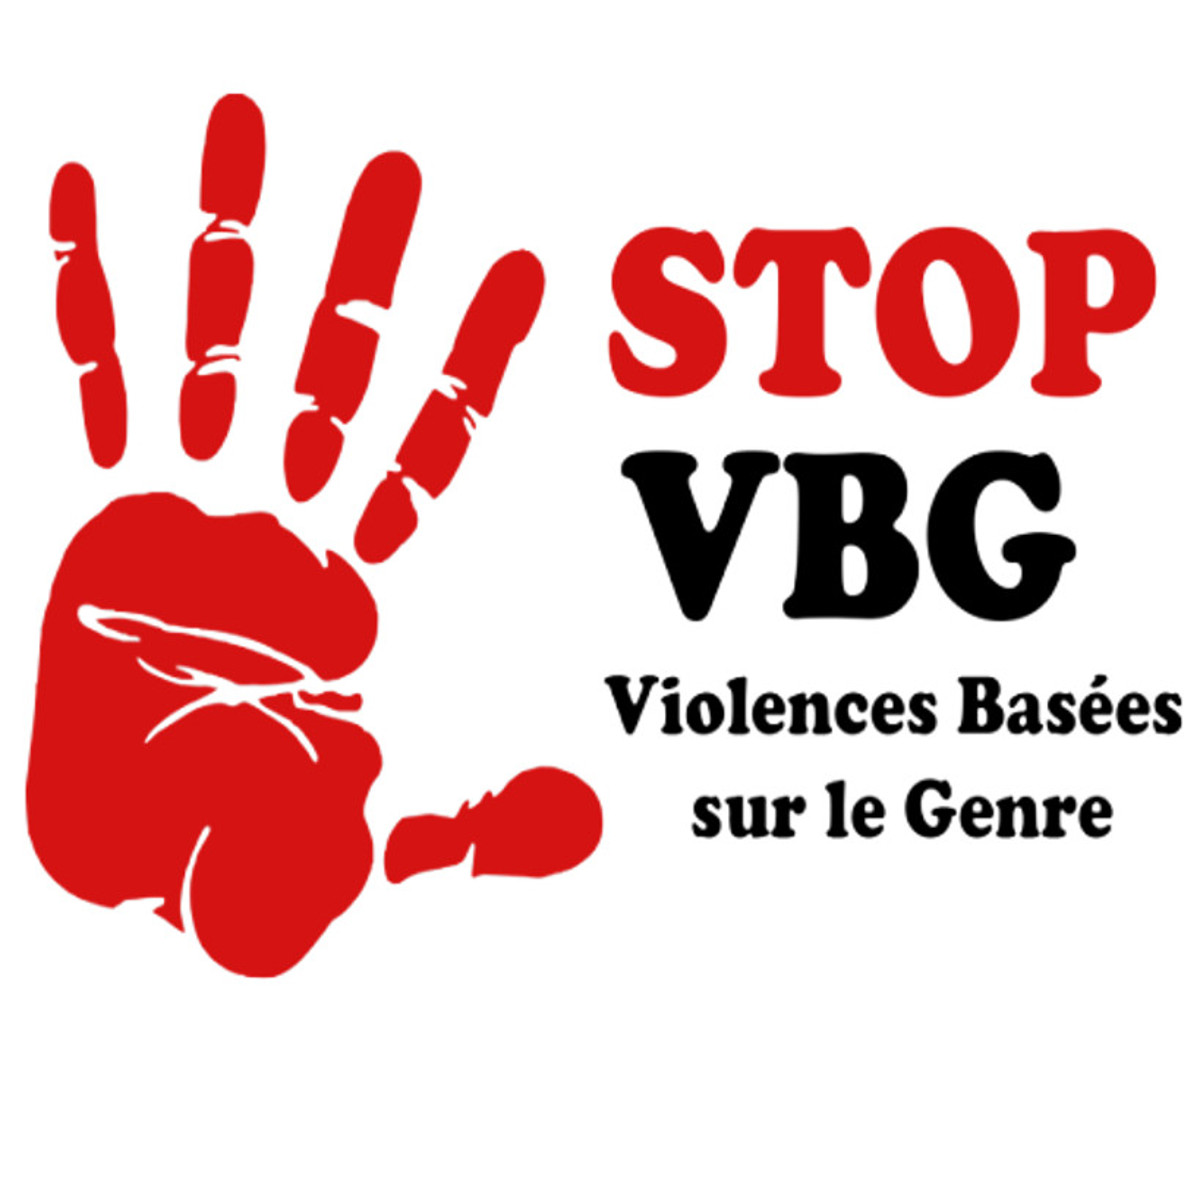 VBG : une enquête en cours à Tominian